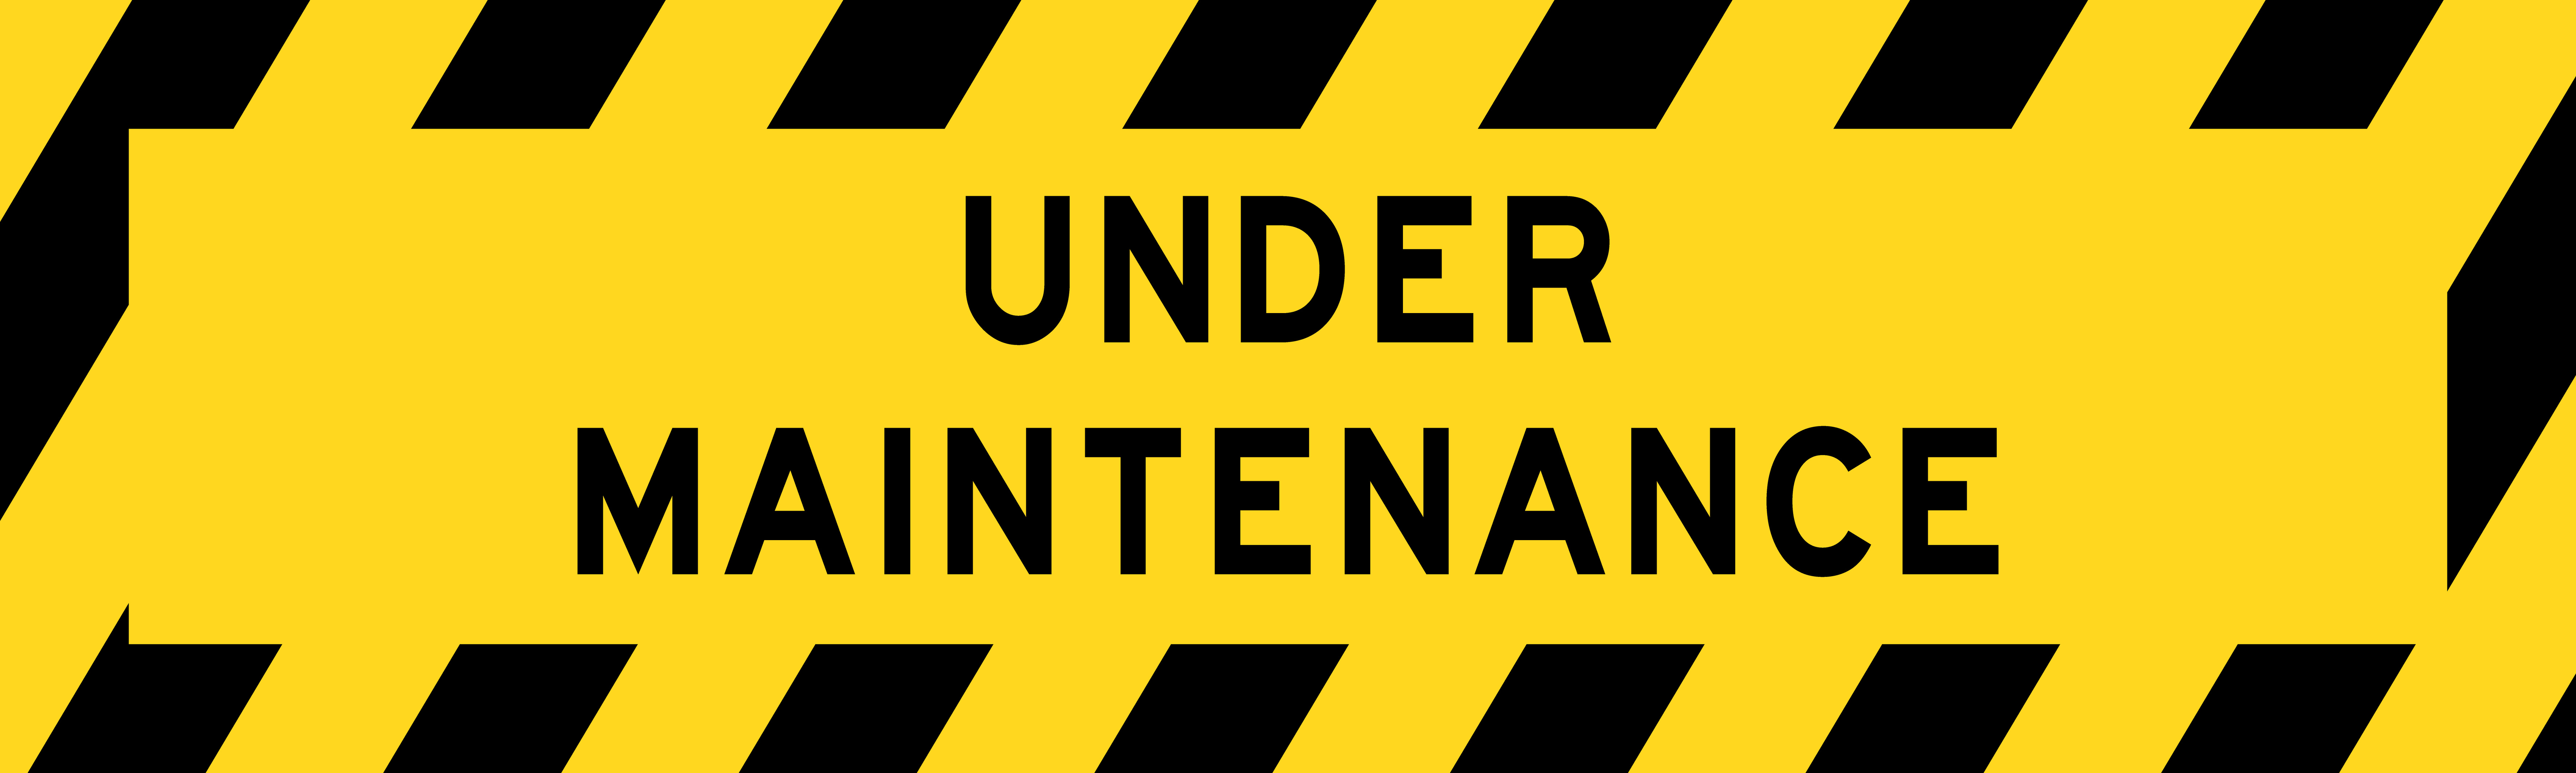 under maintenance